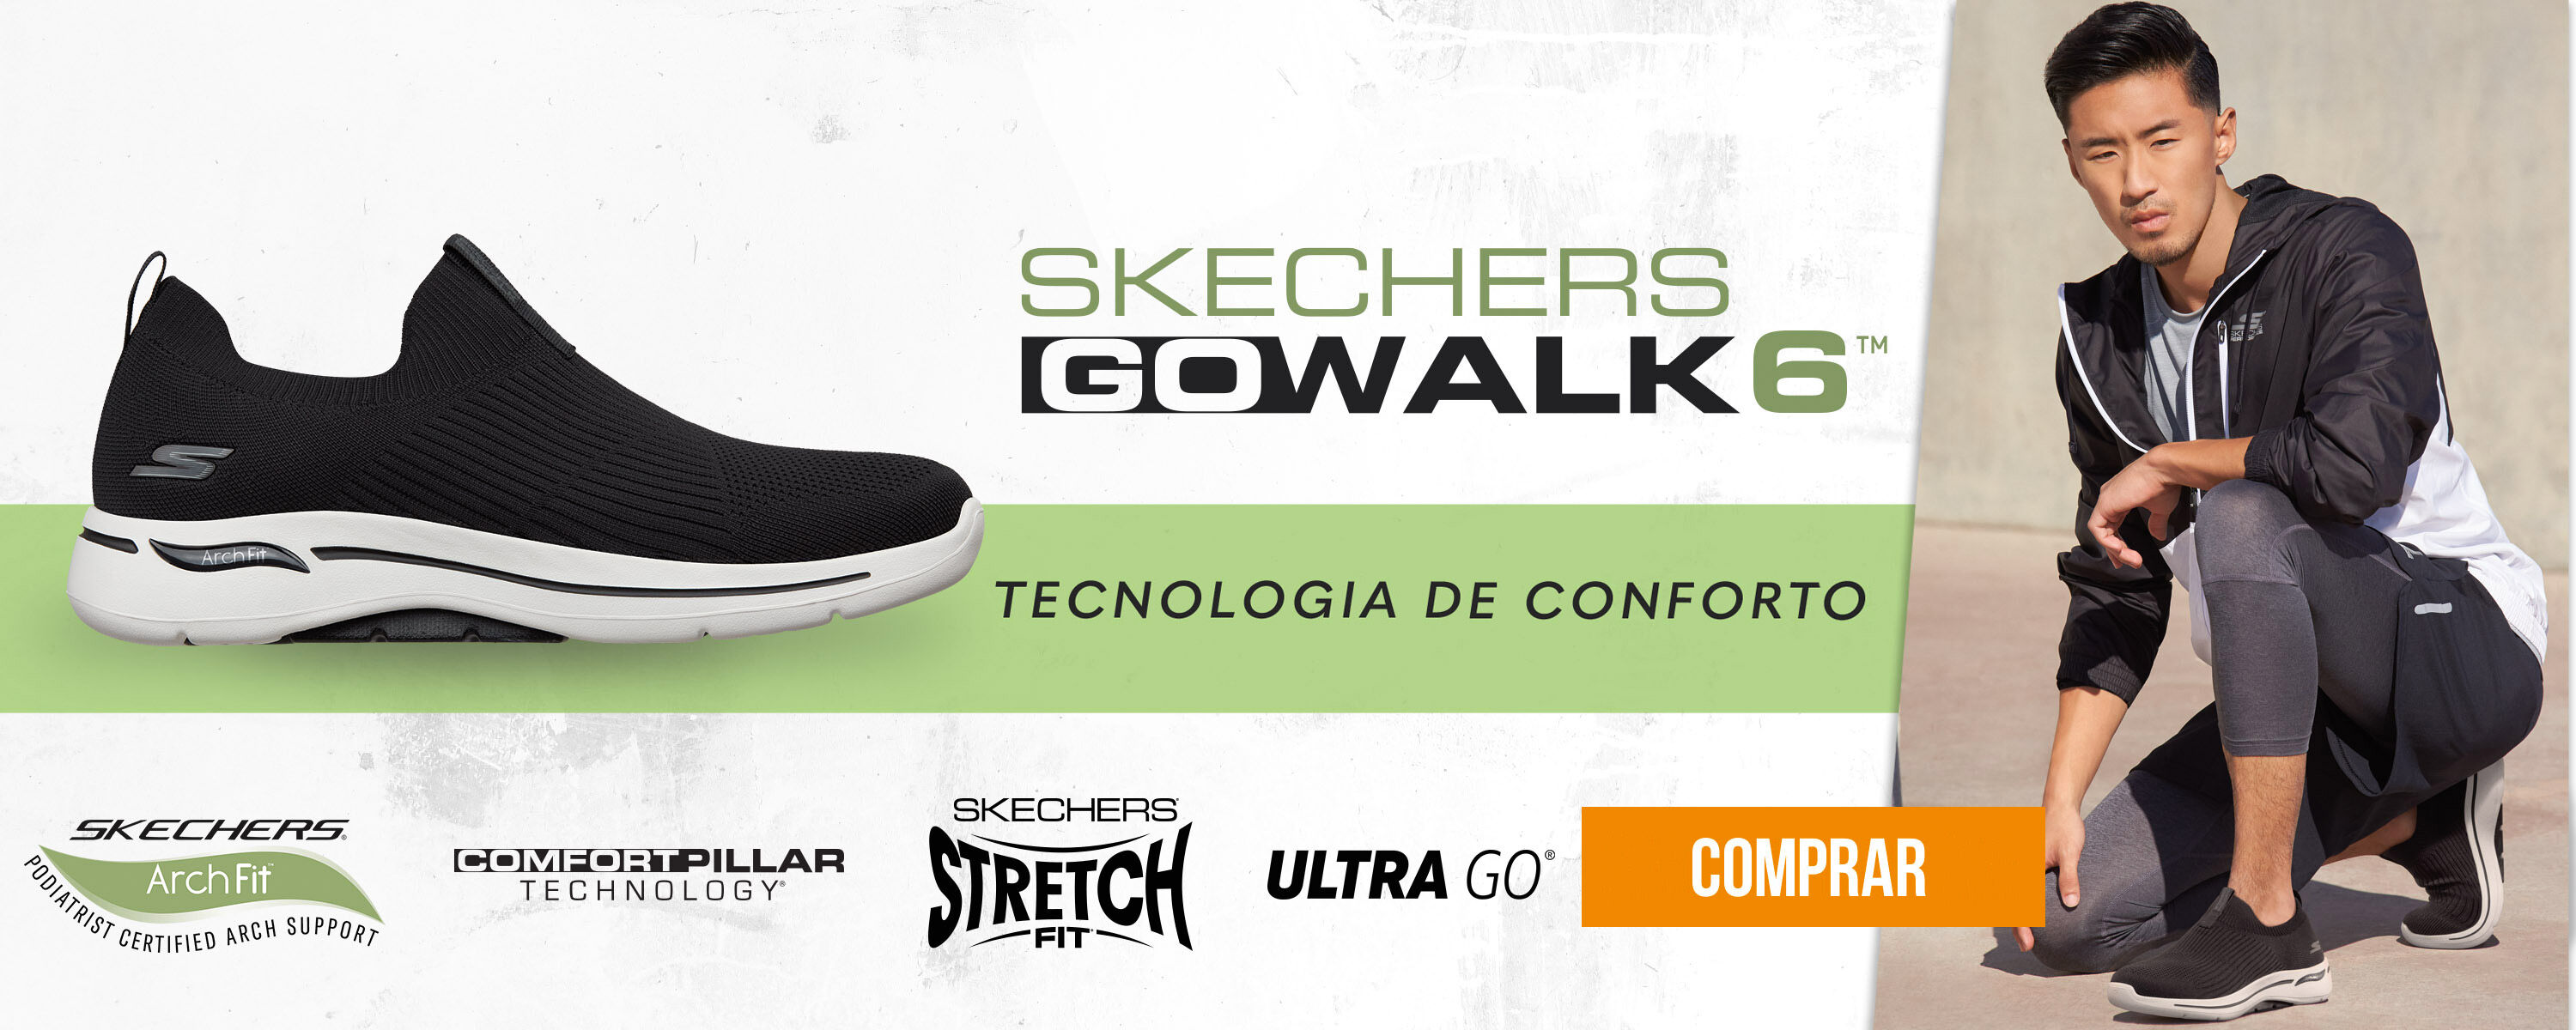 Skechers GO WALK